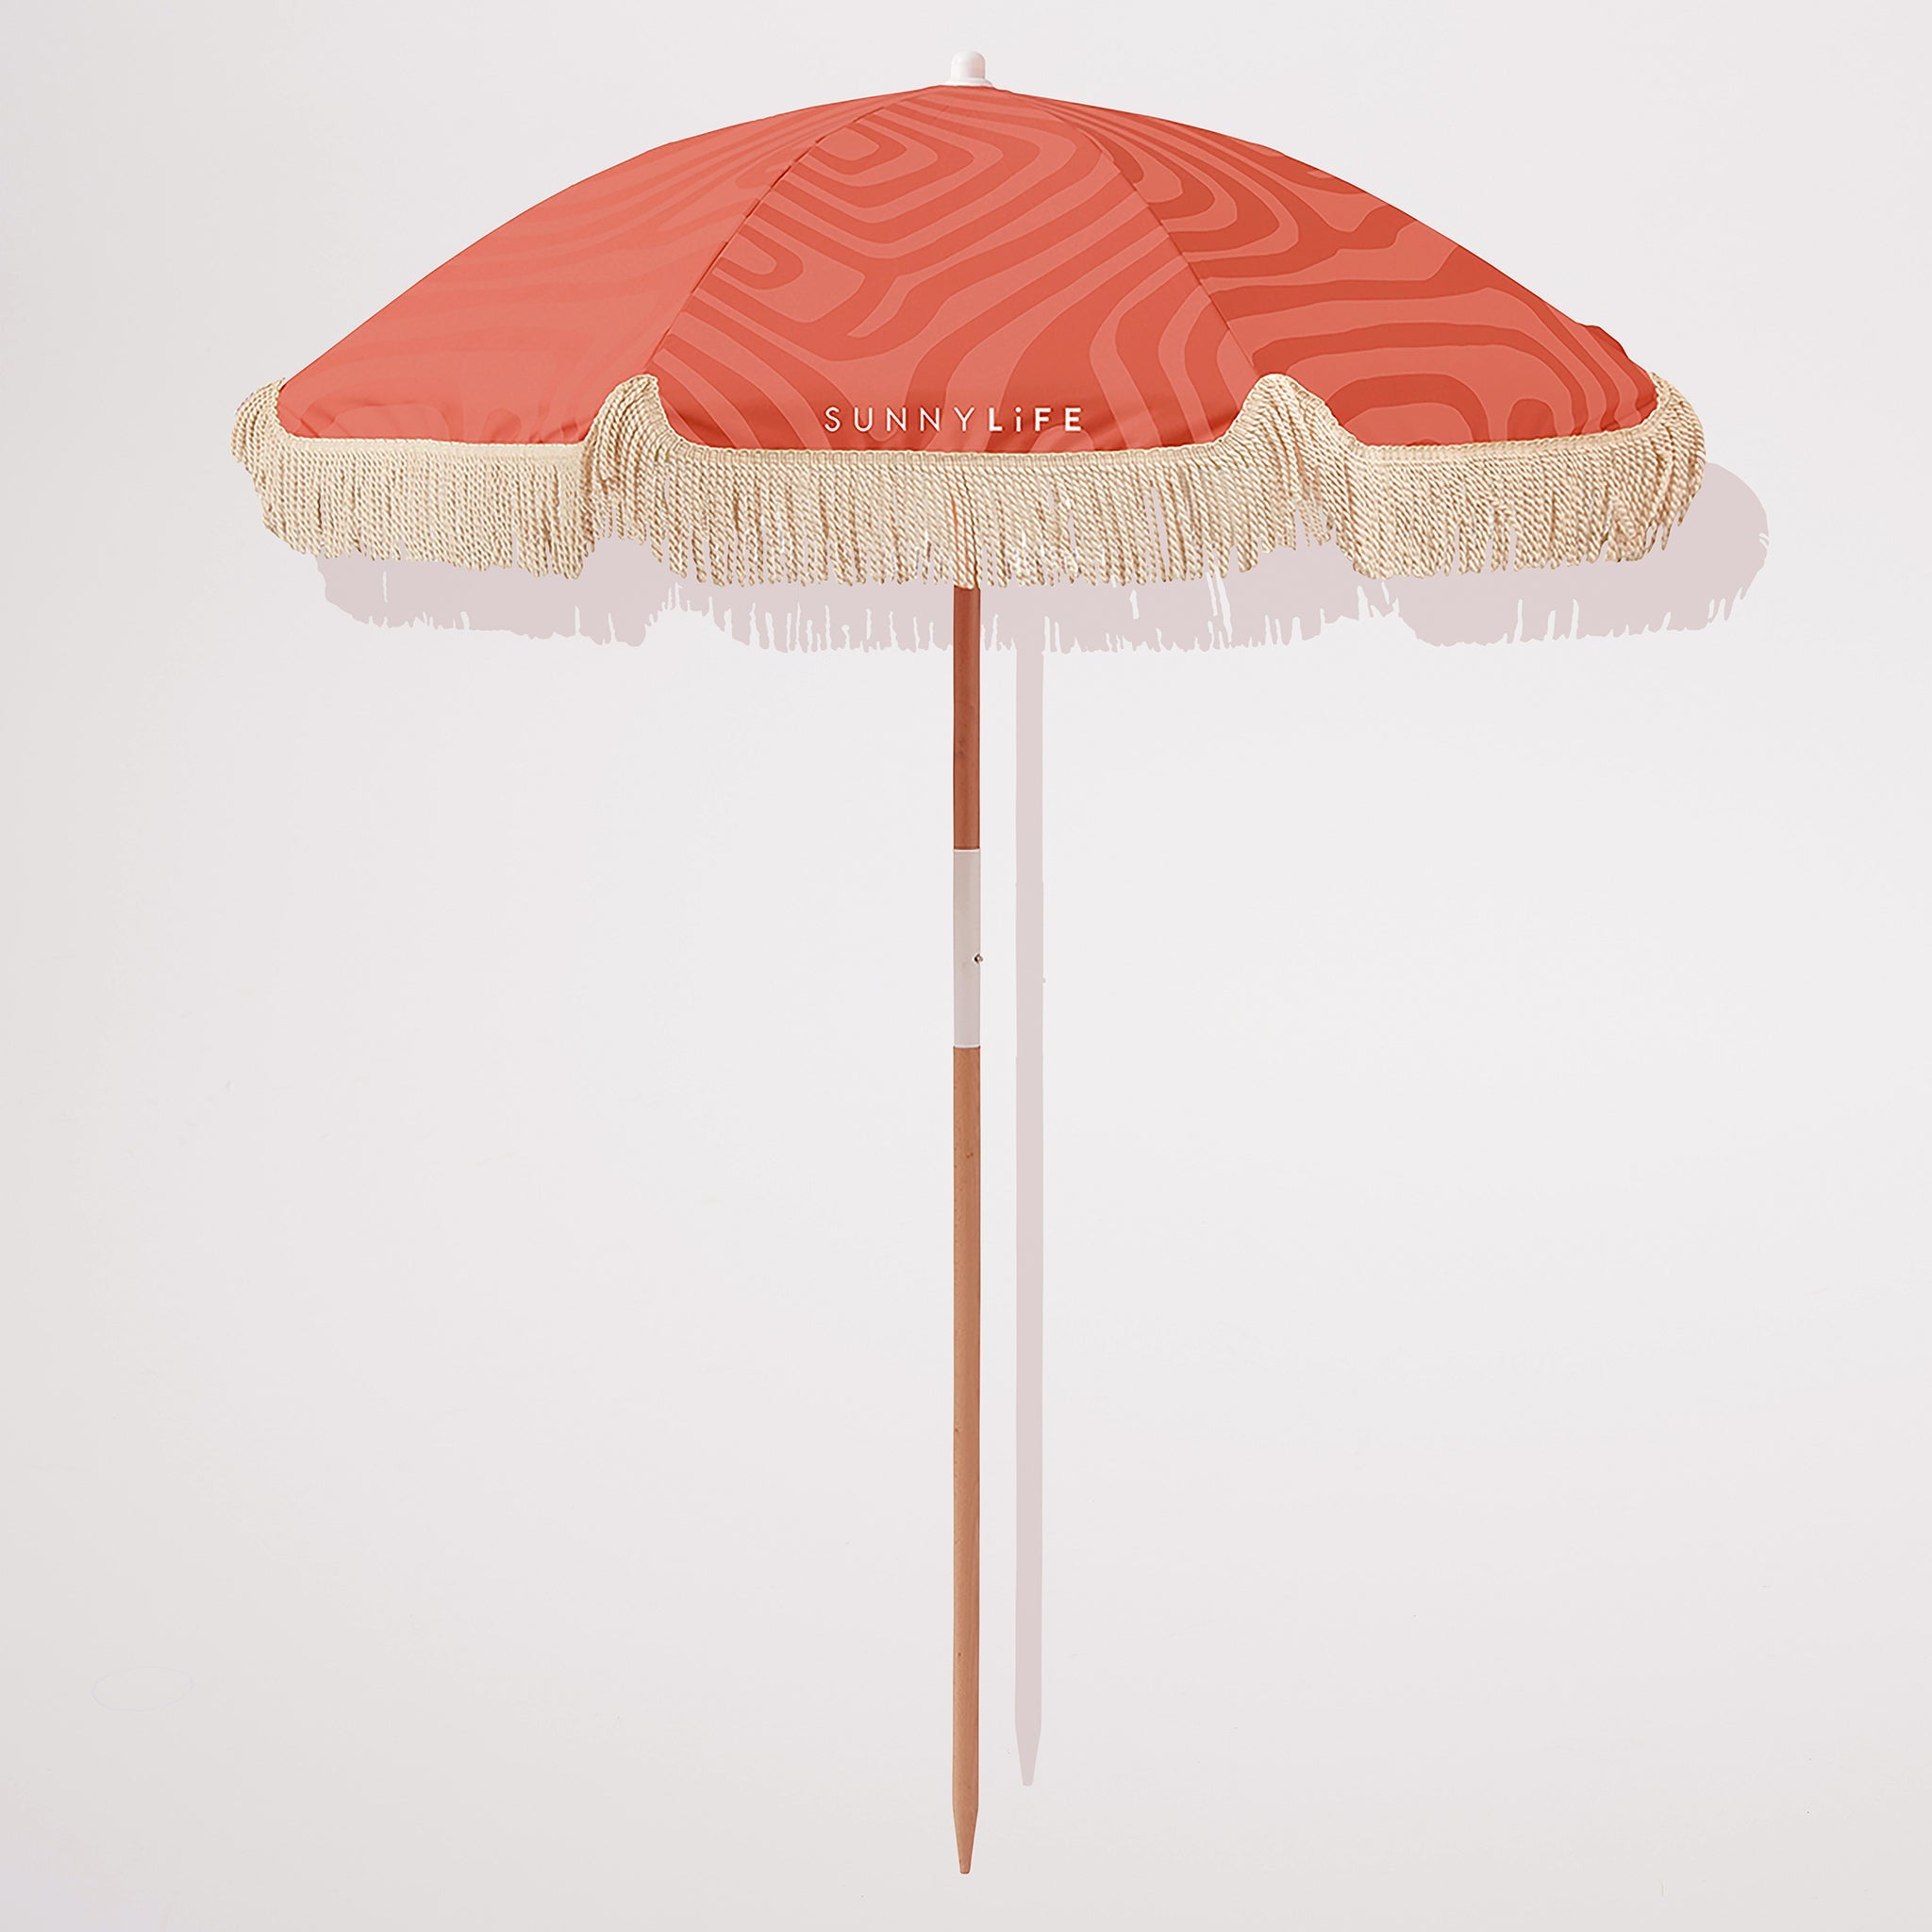 SUNNYLiFE | Luxe Beach Umbrella | Terracotta